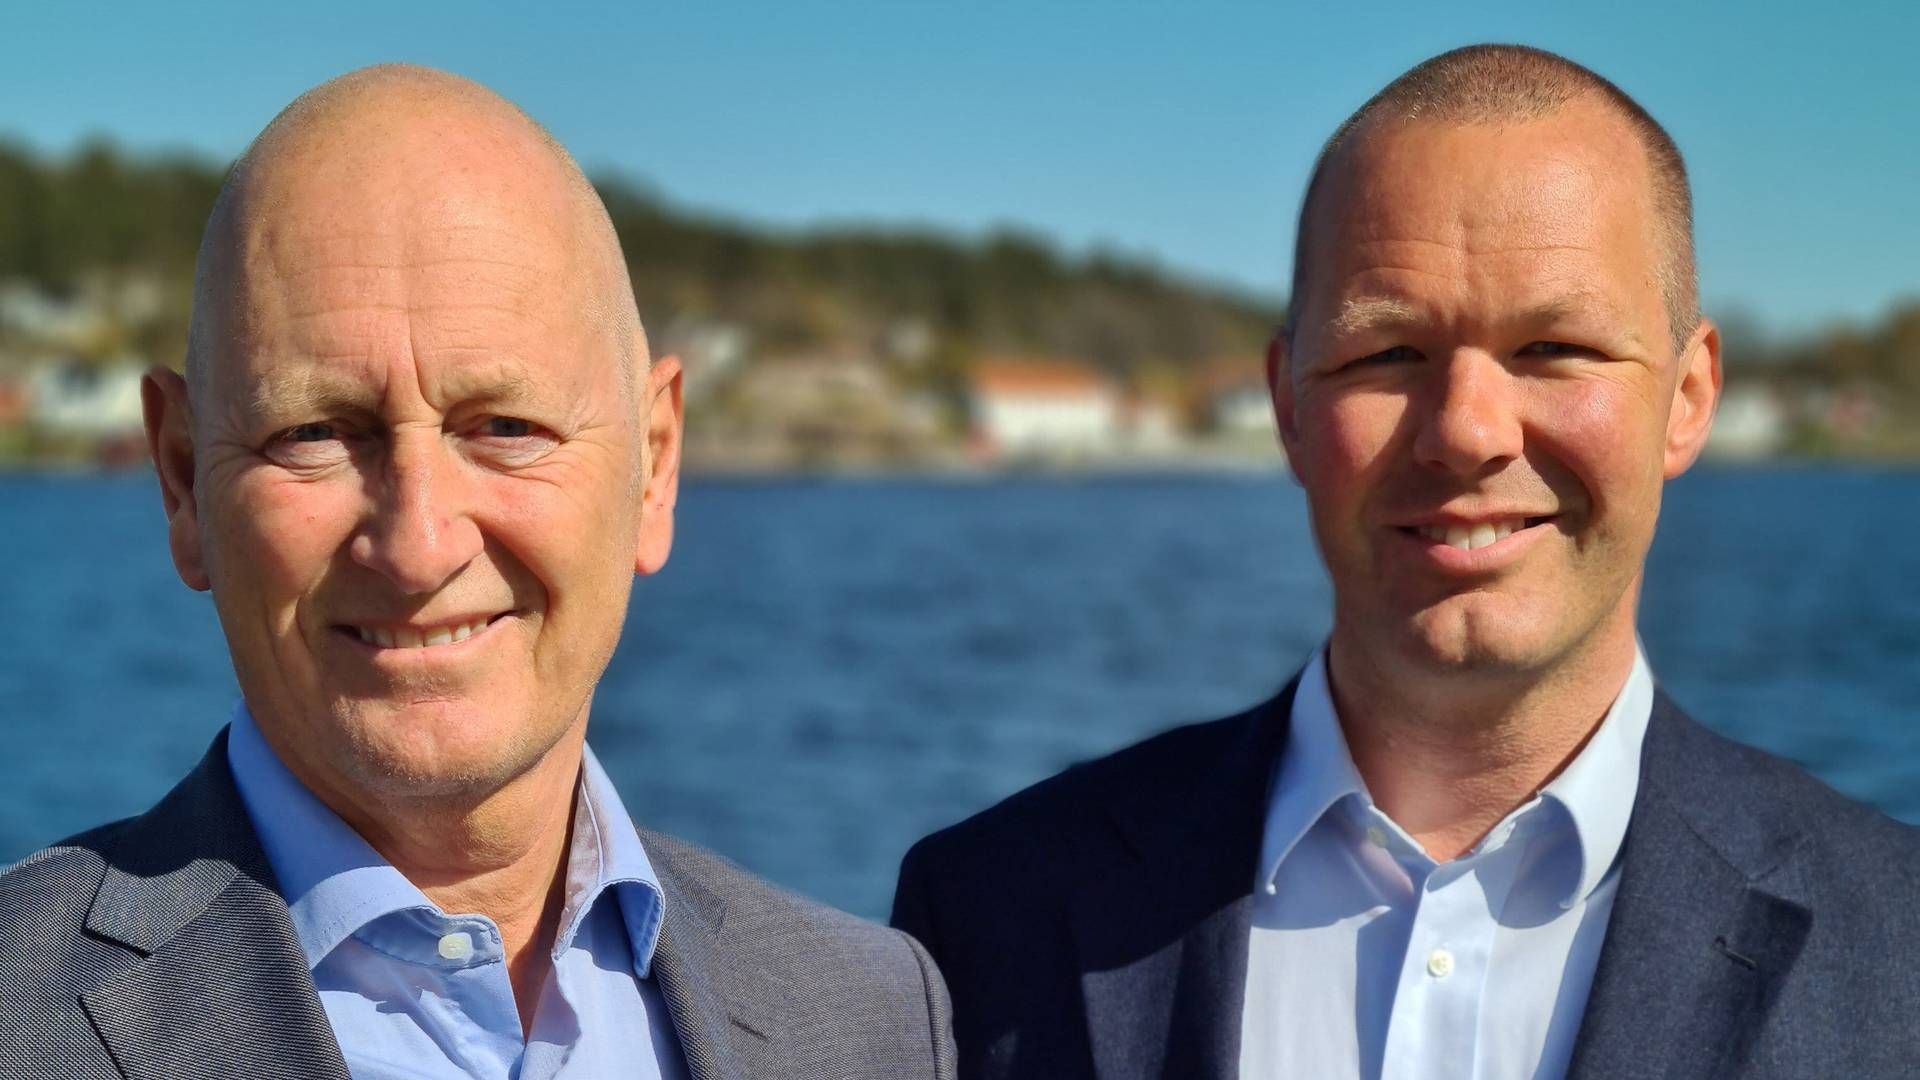 Administrerende direktør i Sparebanken Sør, Geir Bergskaug og den nye sjeføkonomen i banken, Tore Grobæk Vamraak. | Foto: Sparebanken Sør / PR